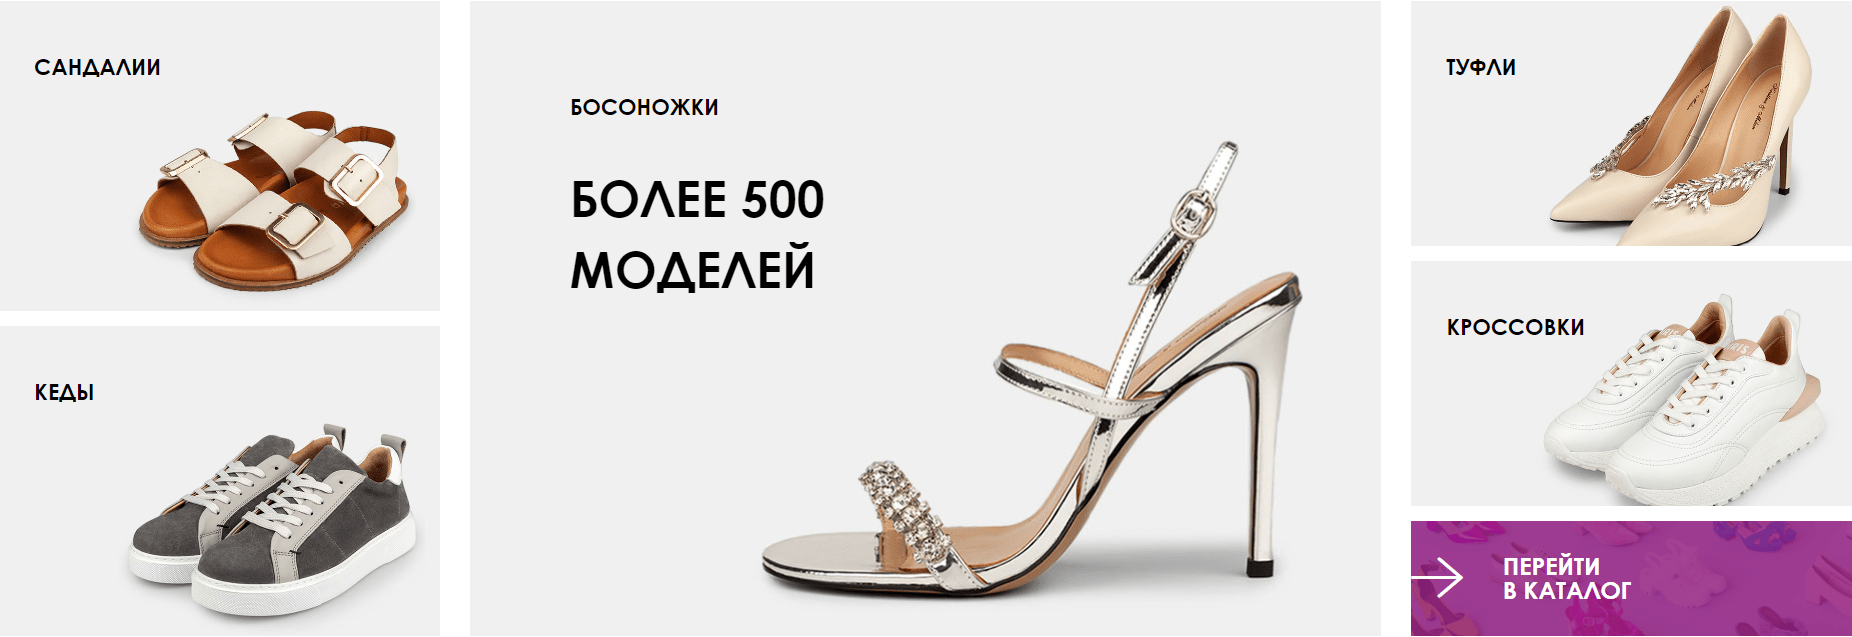 Интернет-магазин Kristina & Milan женской обуви